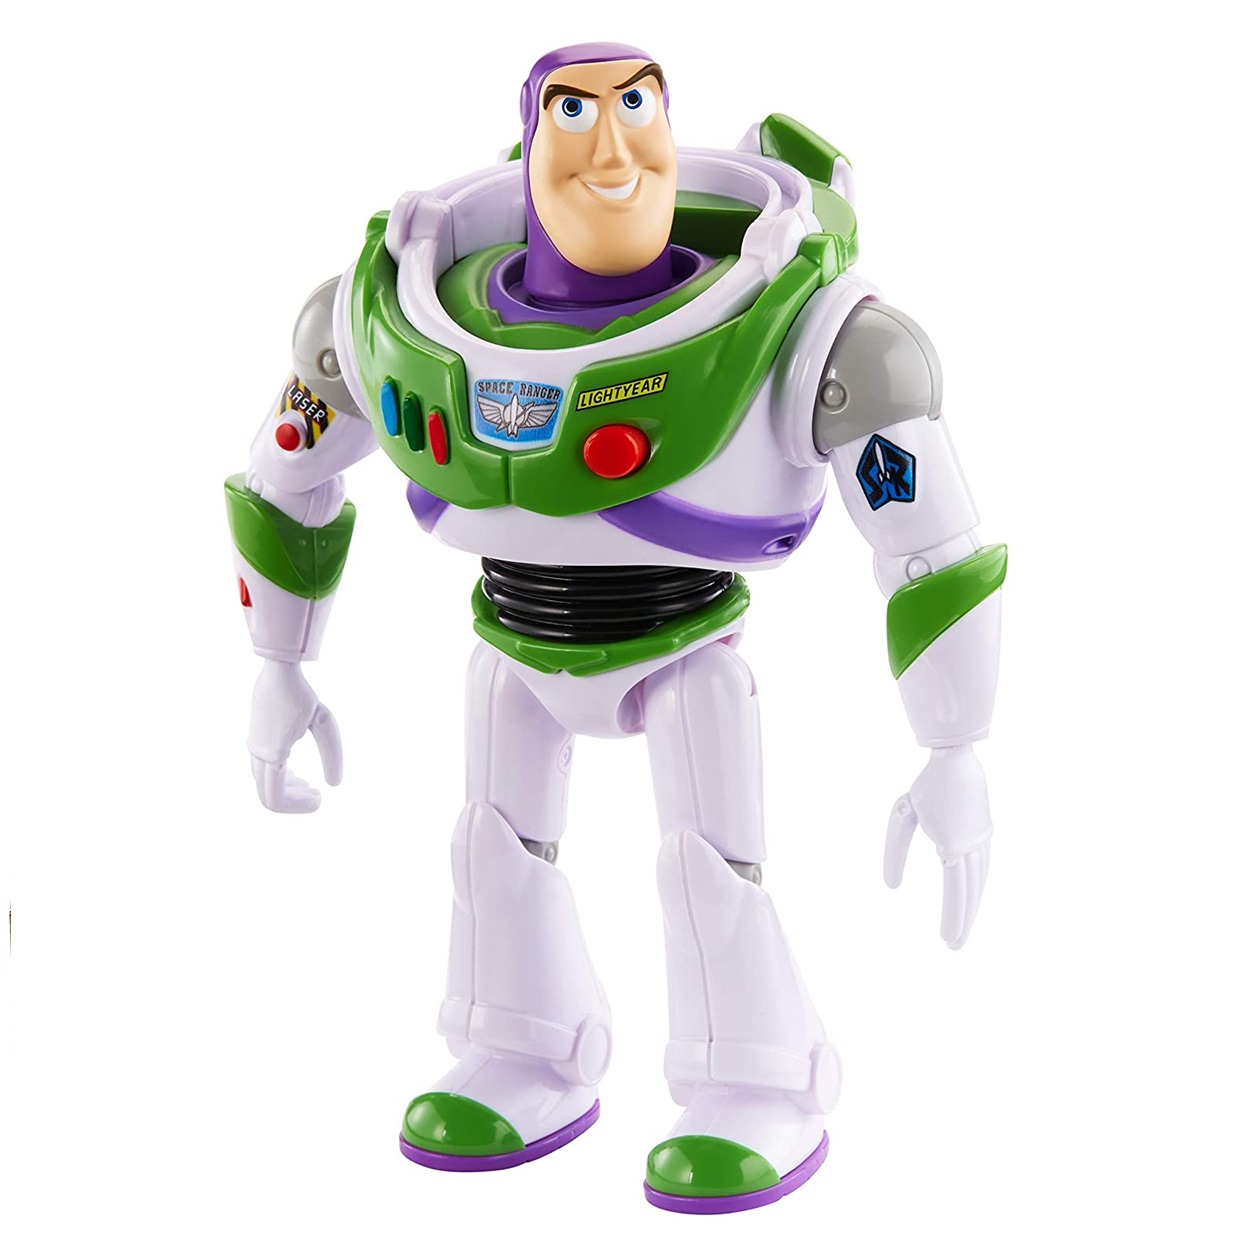 Buzz Lightyear True Talkers Figura Electrónica Toy Story